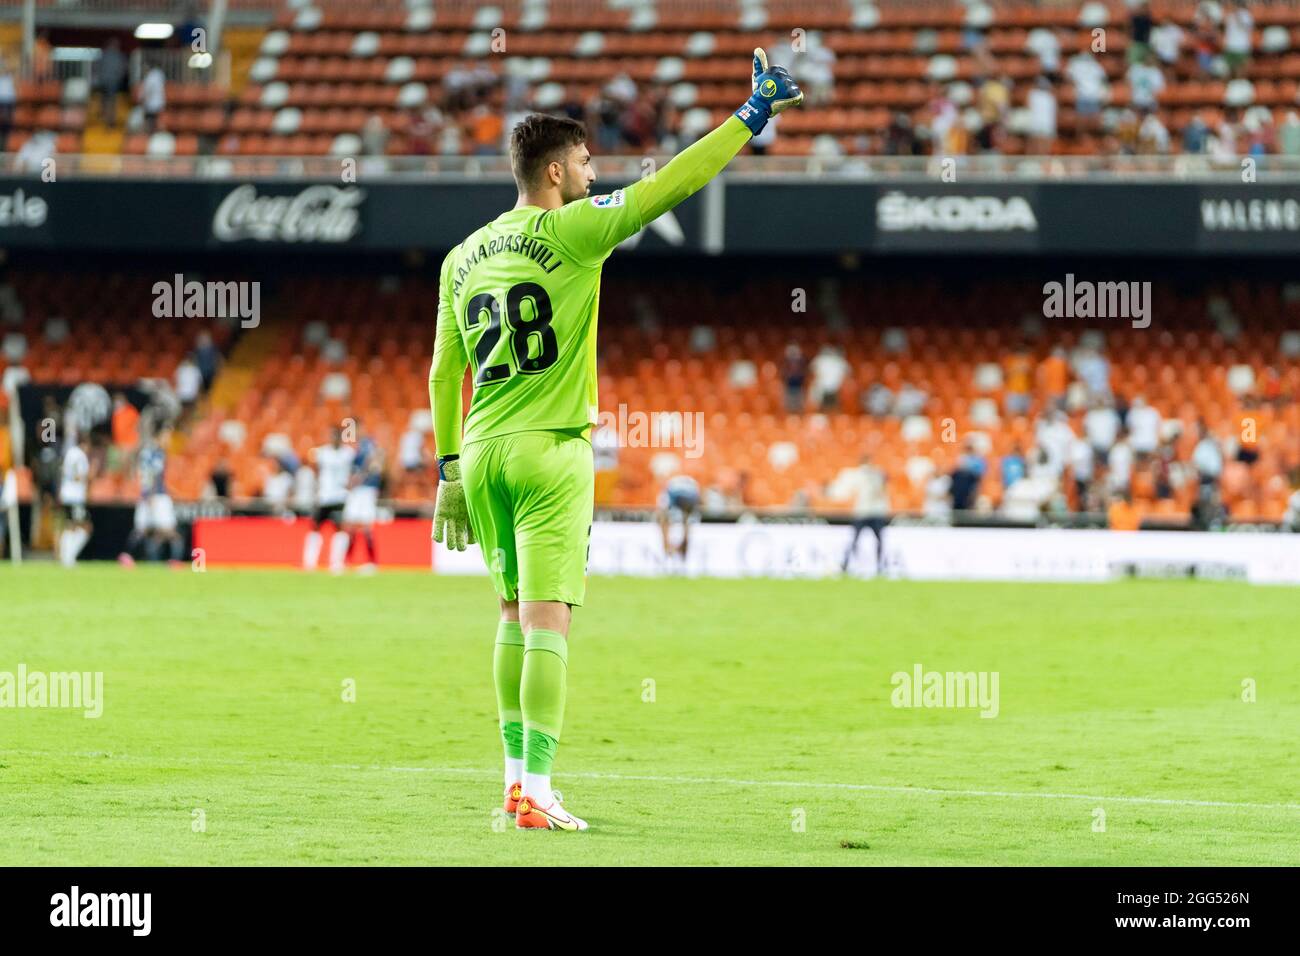 Valencia acha golaço e conta com Mamardashvili para segurar empate com  Barcelona 